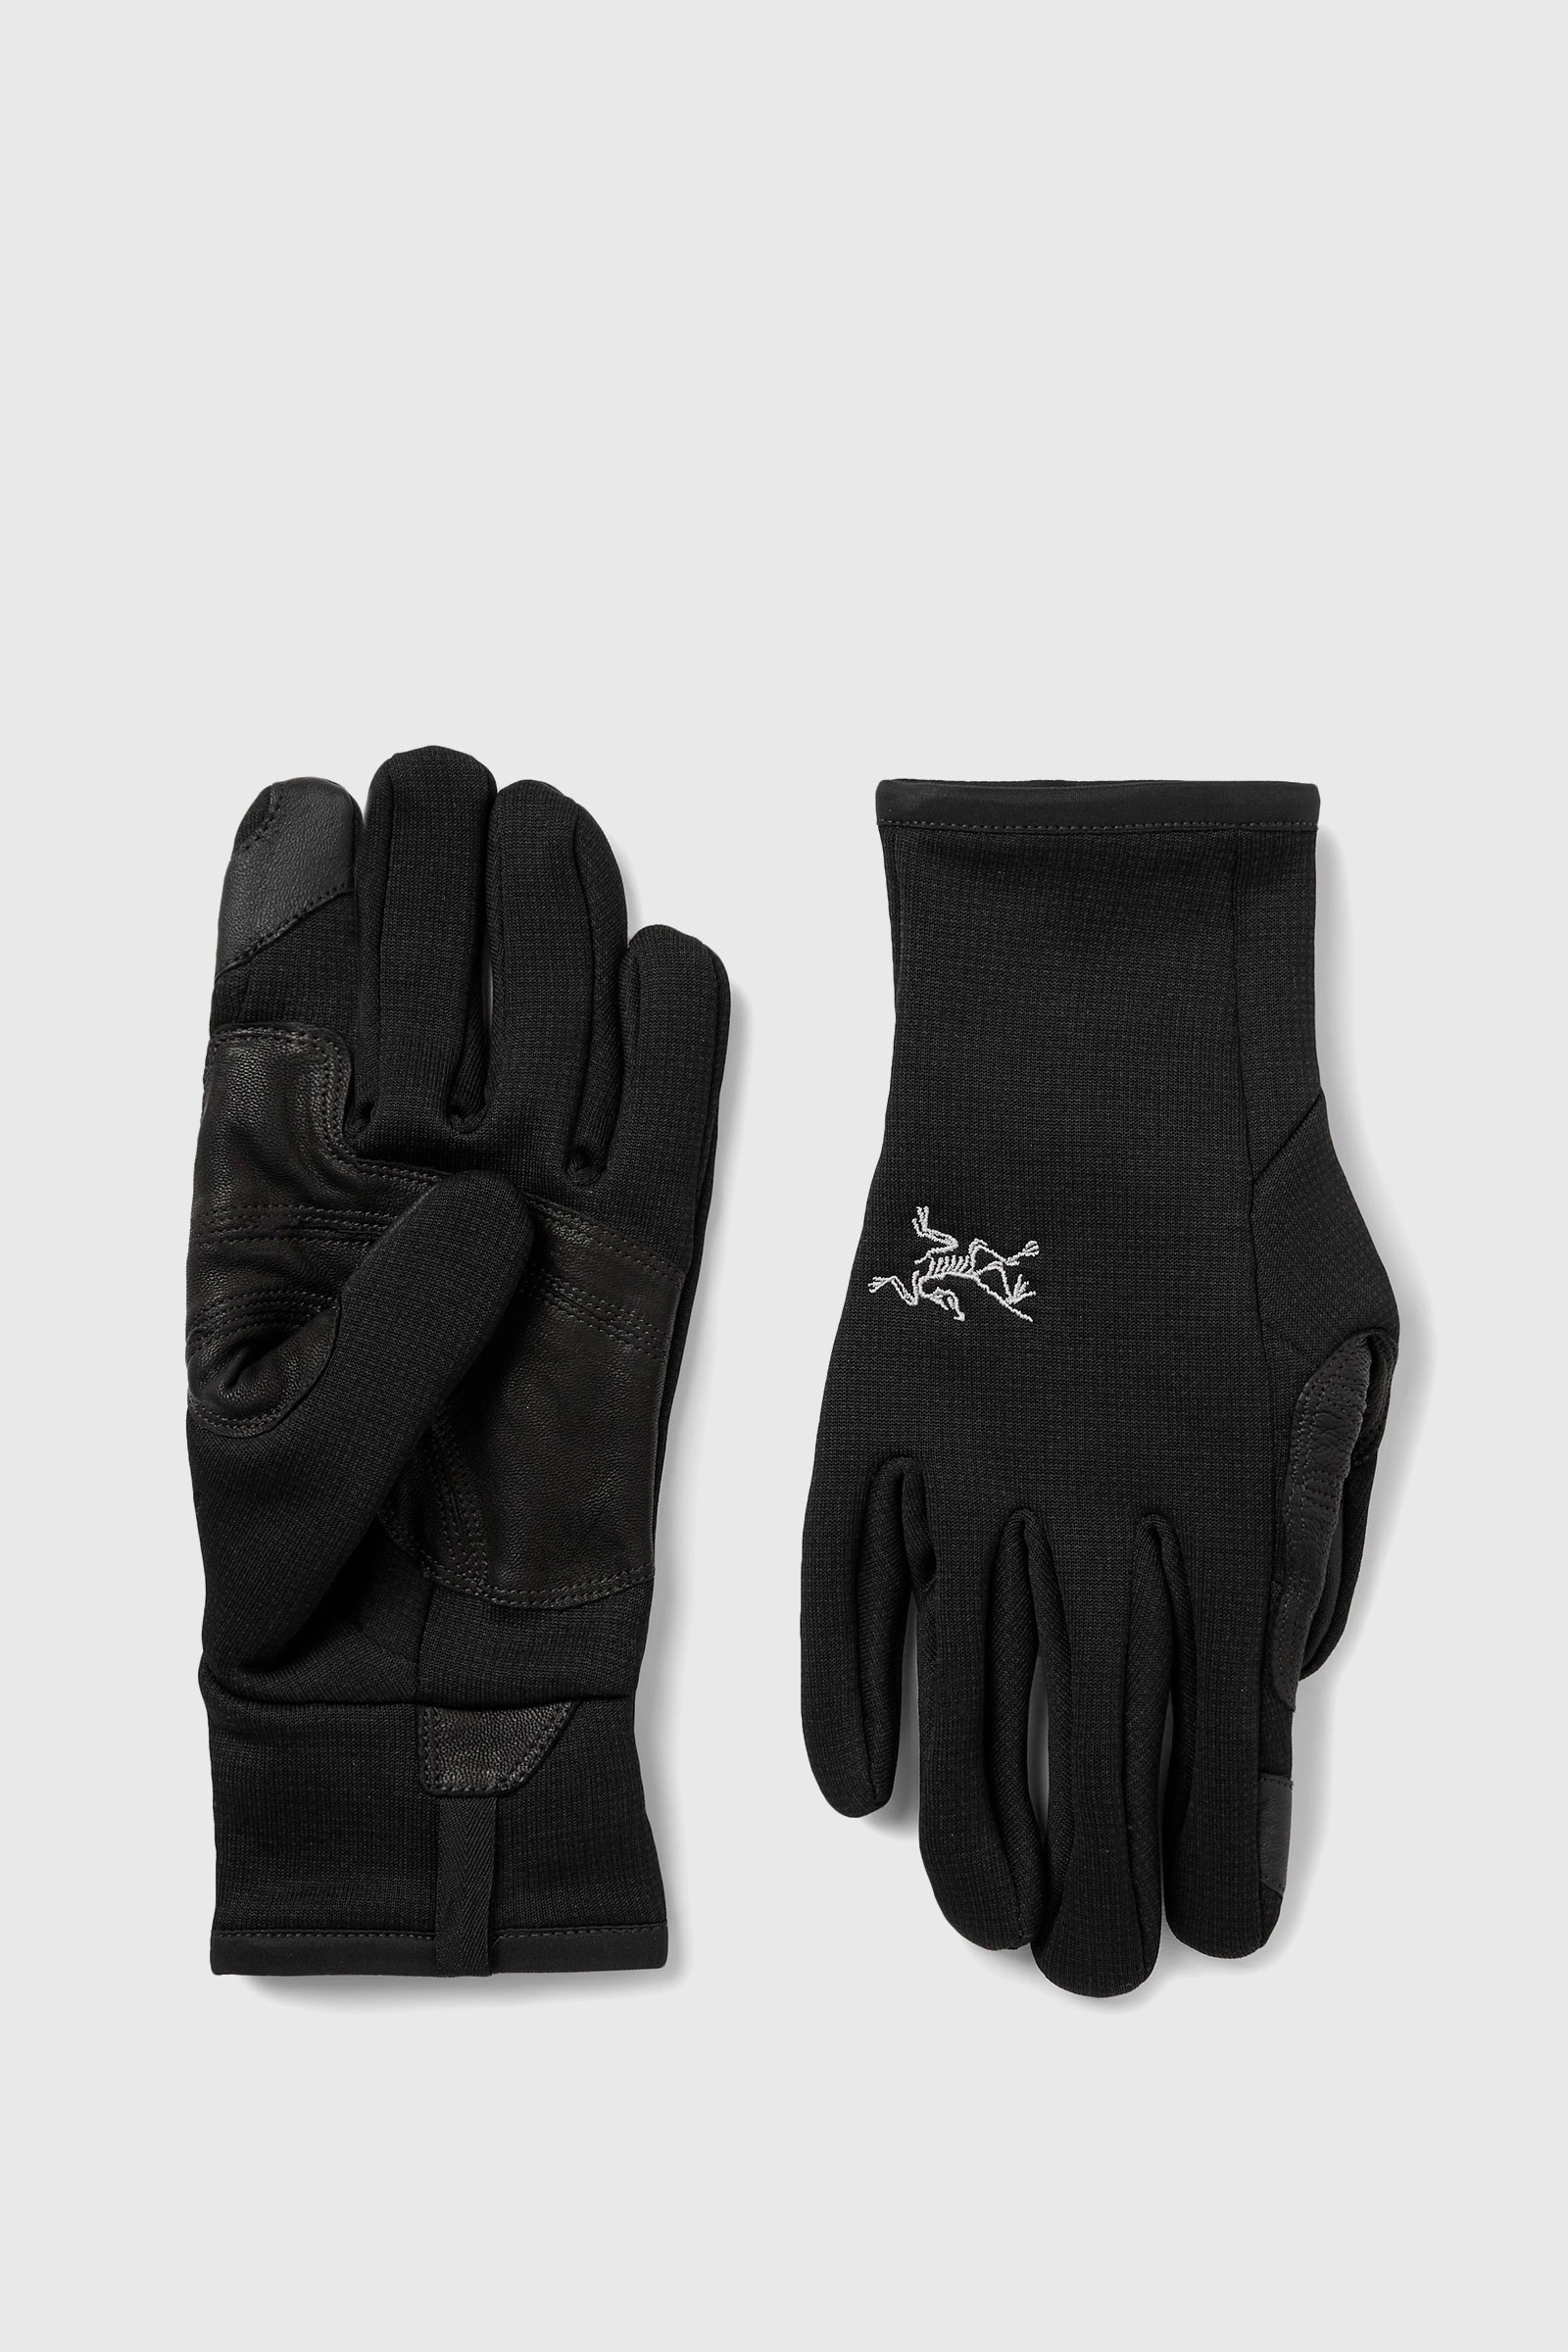 ARC'TERYX Rivet Glove Black